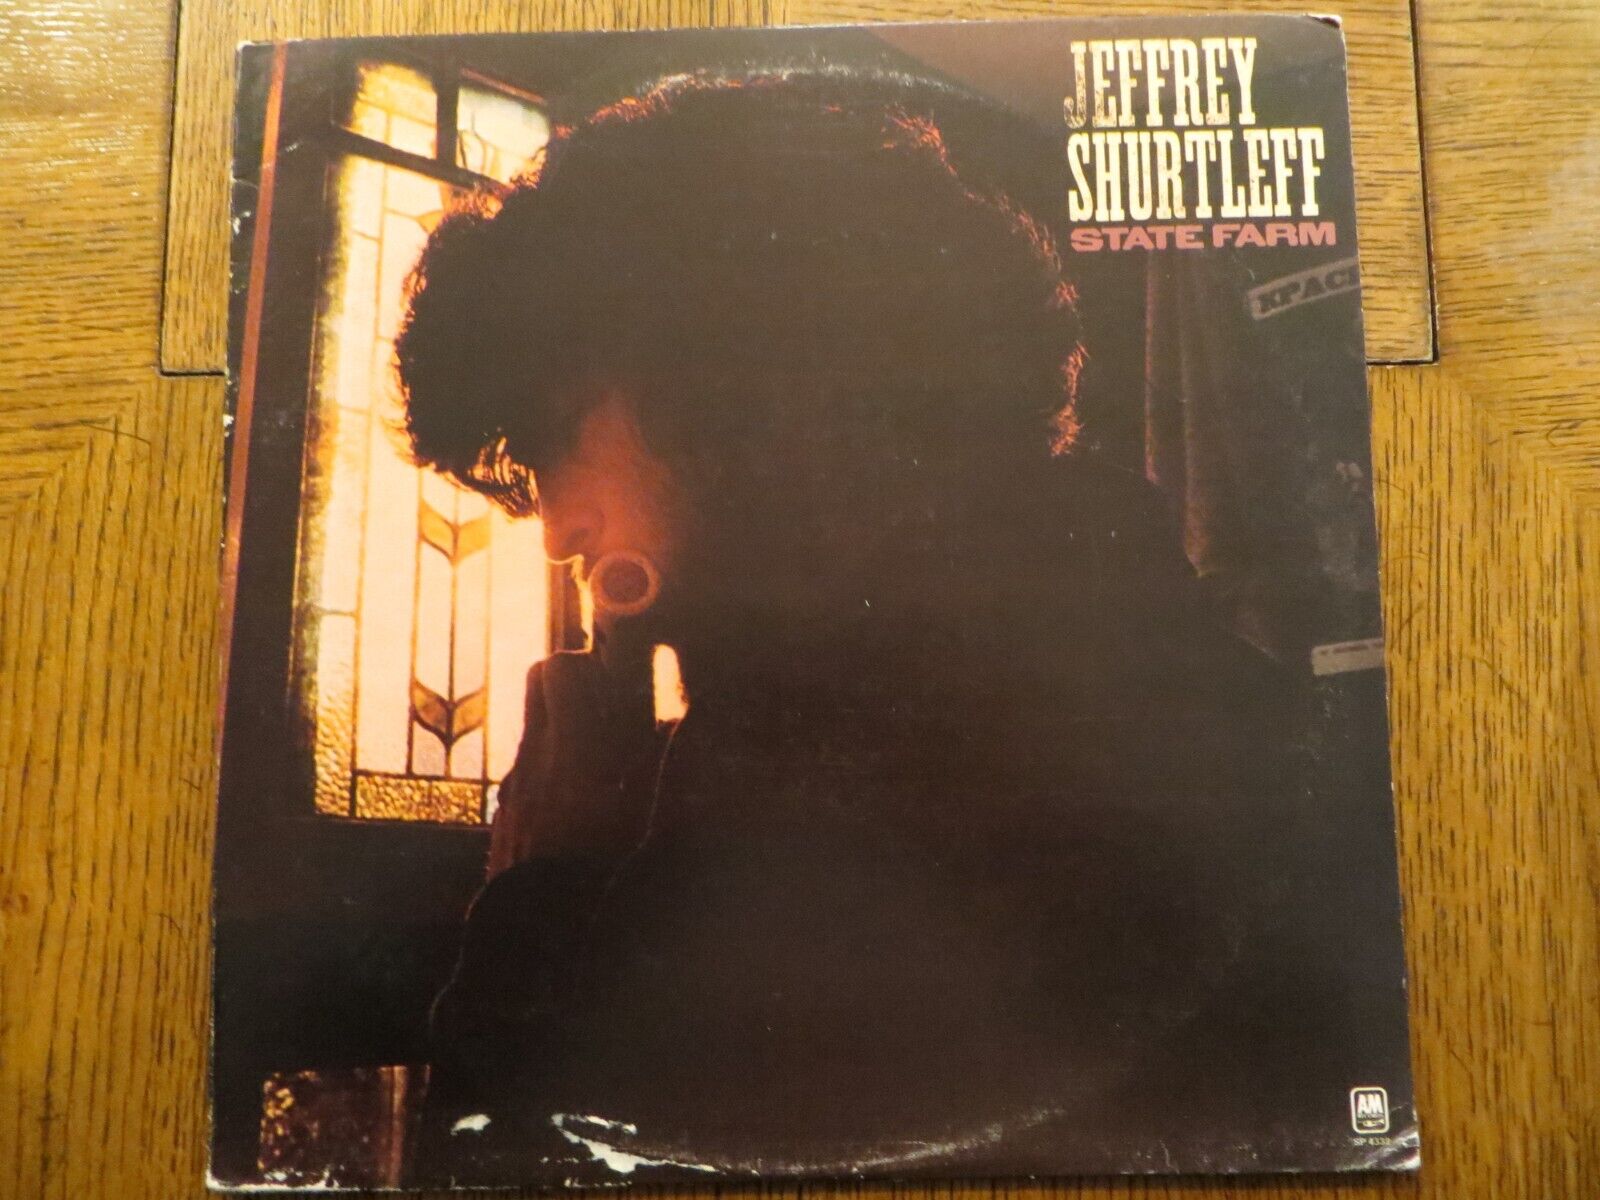 Jeffrey Shurtleff – State Farm - 1971 - A&M Records SP-4332 Vinyl LP VG/VG+